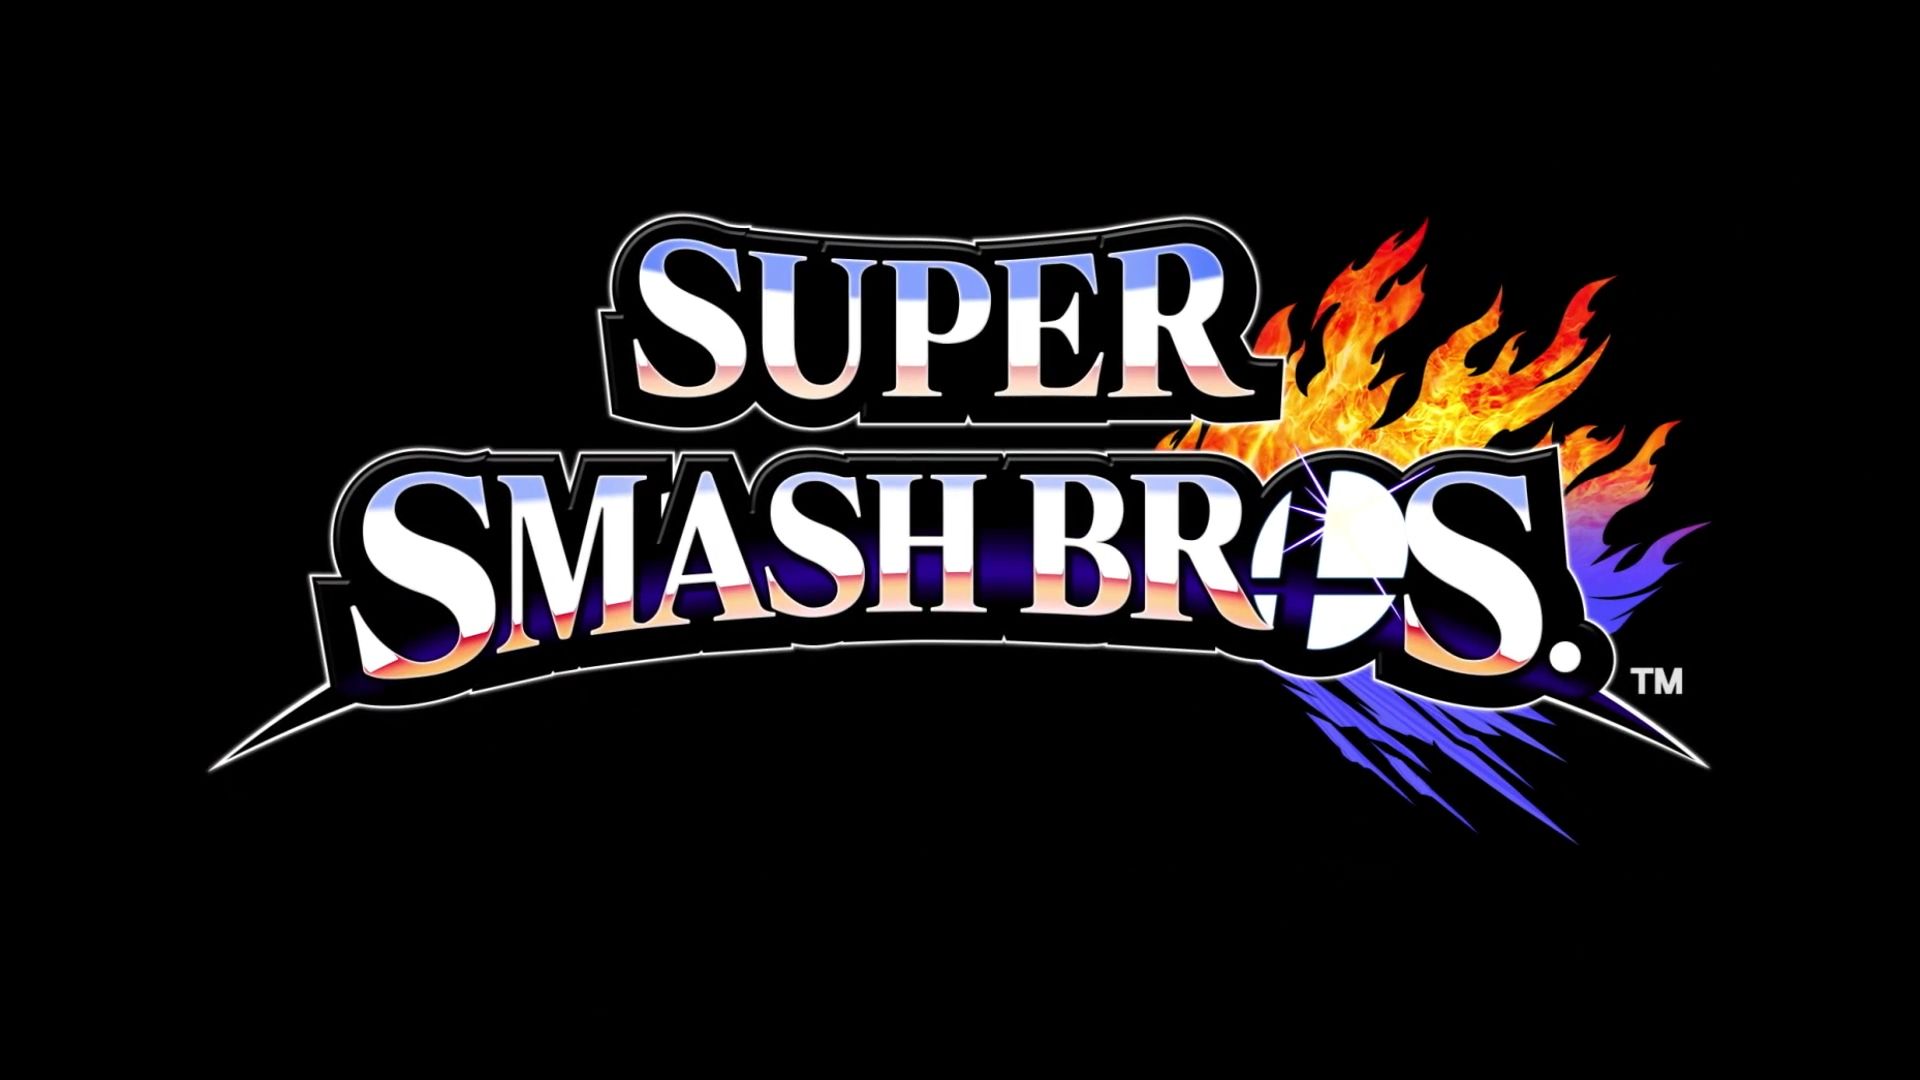 Скачать картинку Super Smash Bros Для Nintendo 3Ds И Wii U, Братья Супер Смэш, Видеоигры в телефон бесплатно.